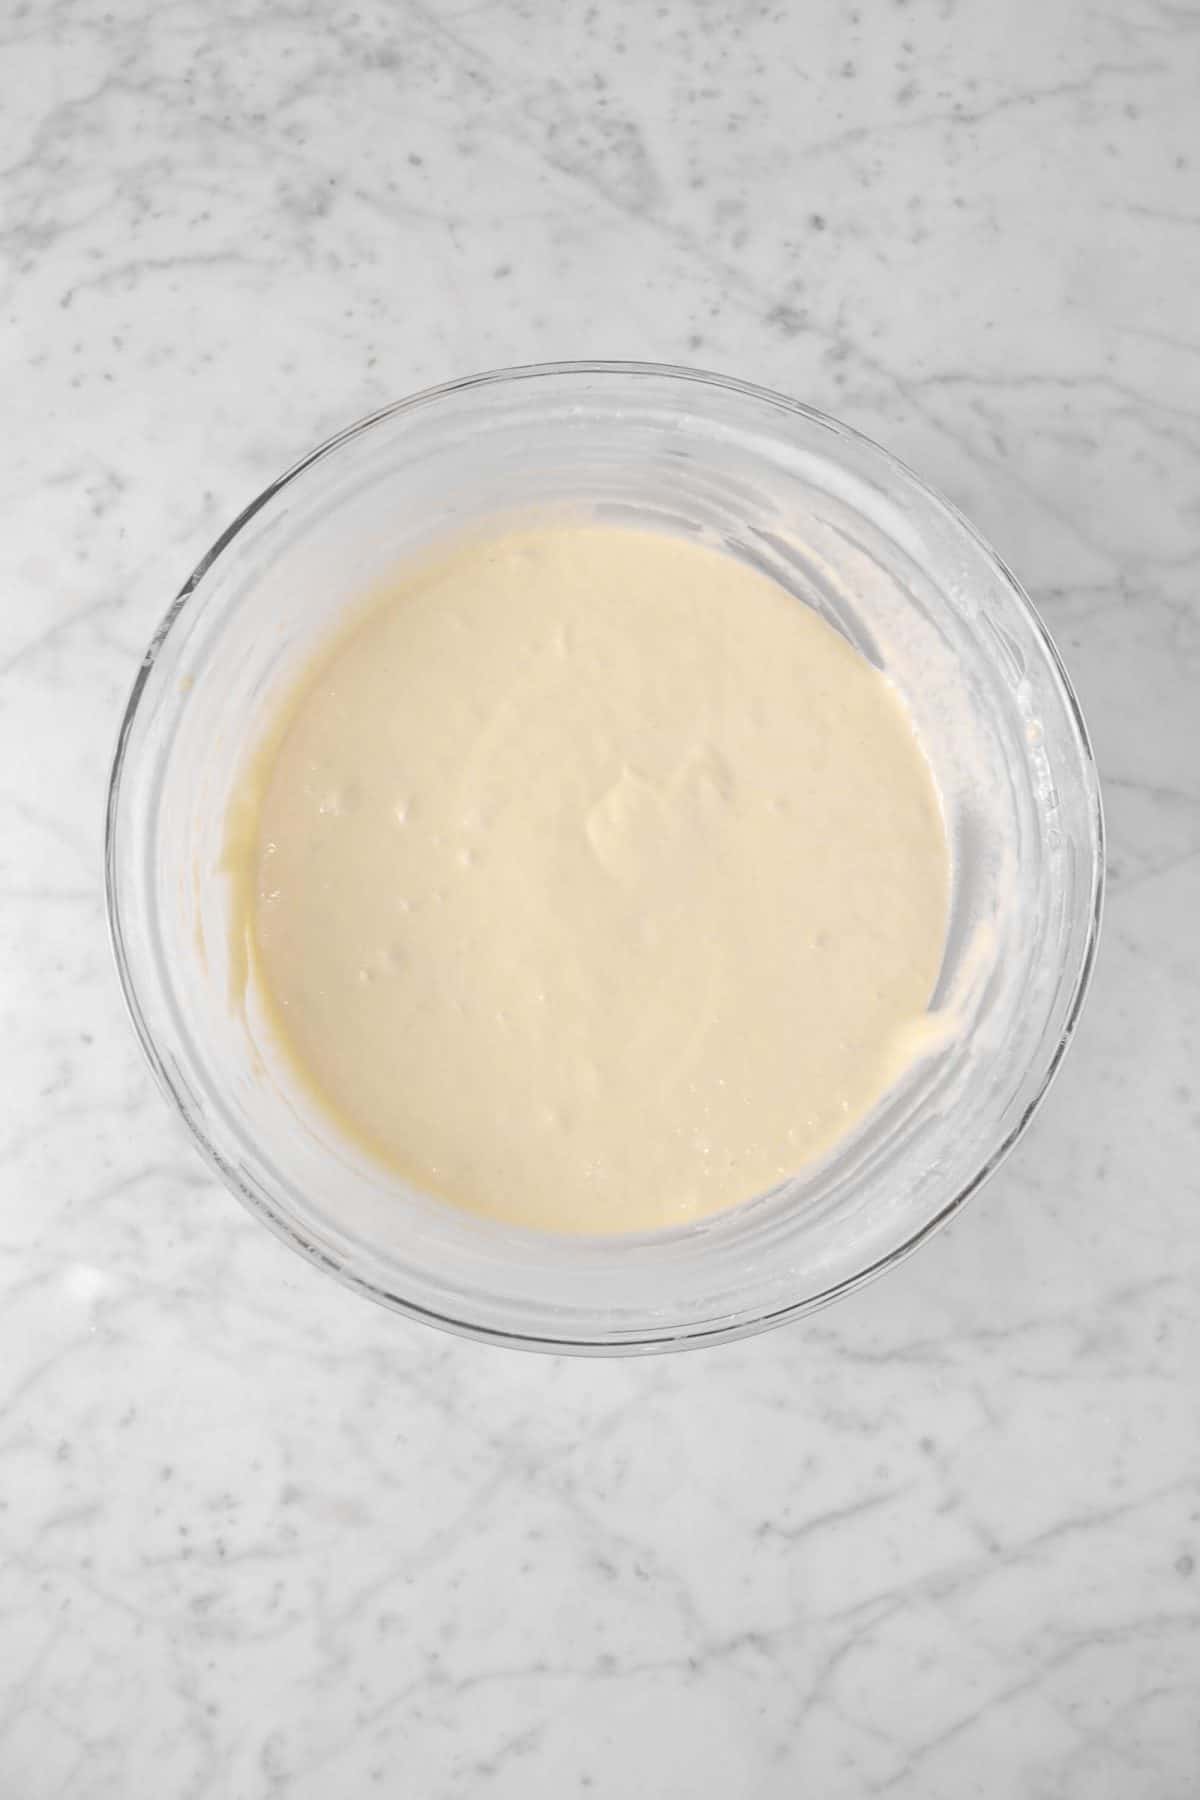 sourdough pancake batter in a glass bowl